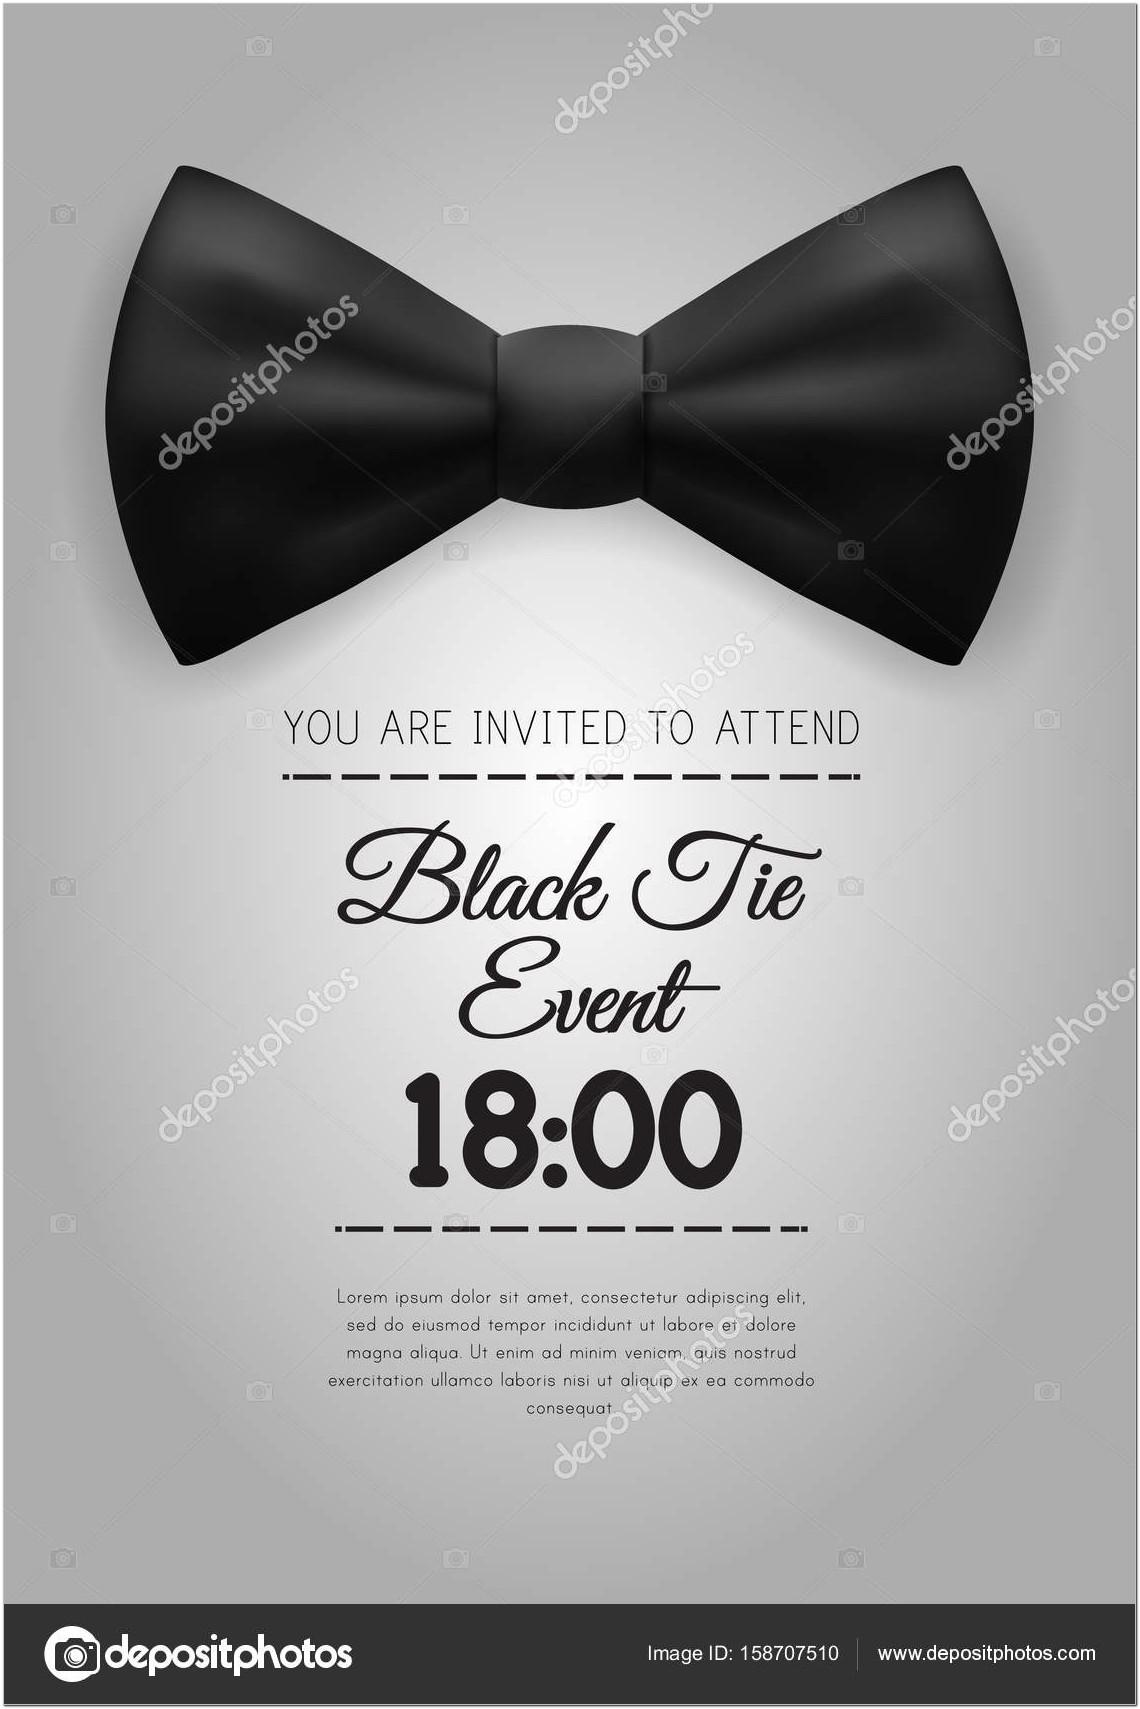 Black Tie Event Invitation Template